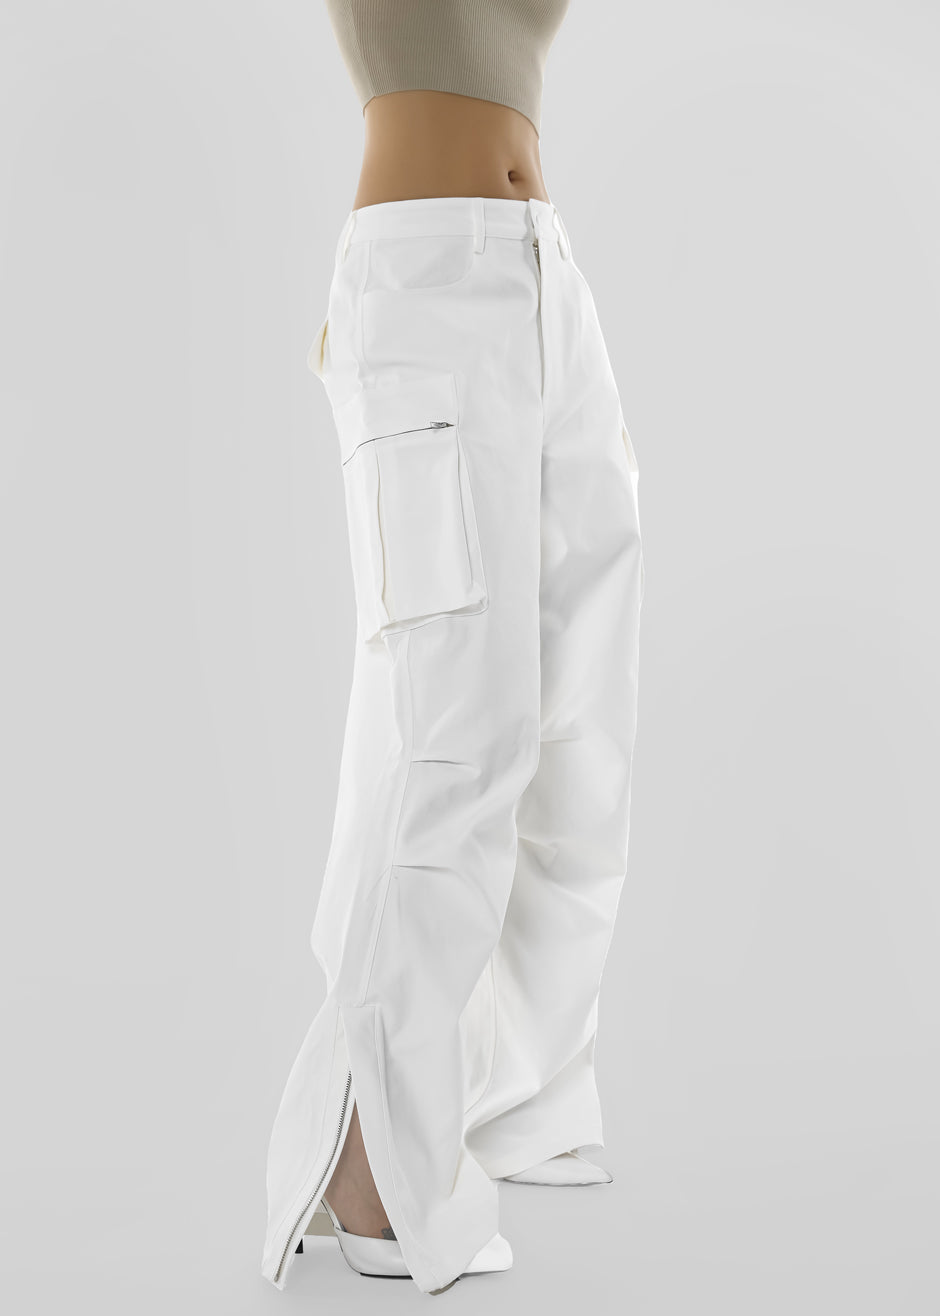 Valo Cargo Pants - White